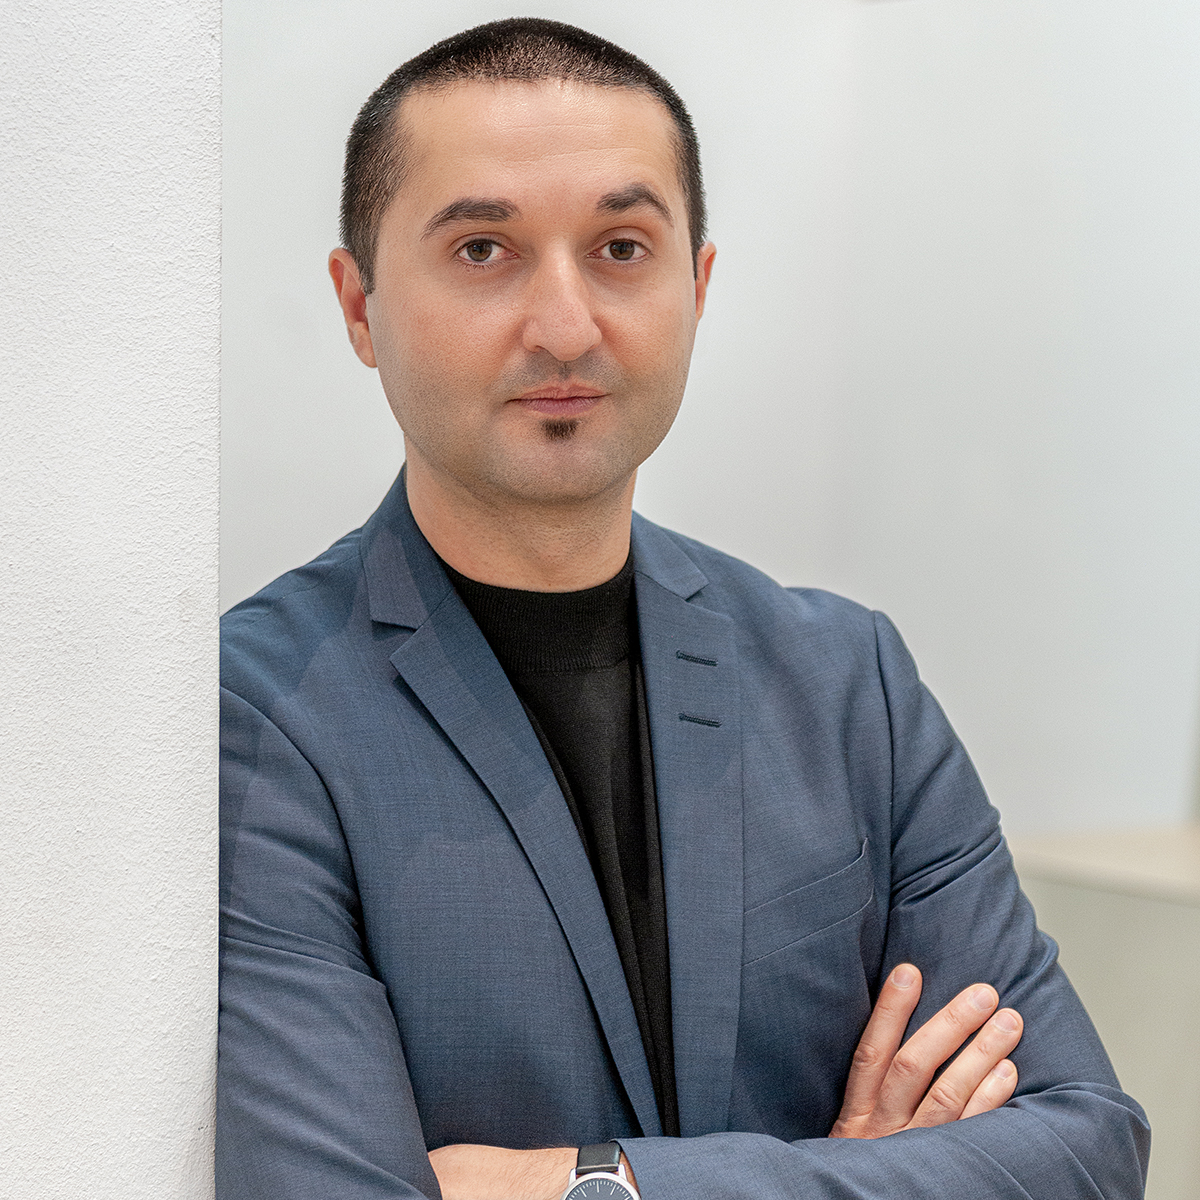 Portraitfoto des Gesundheitswissenschaftlers Prof. Dr. med. Kayvan Bozorgmehr